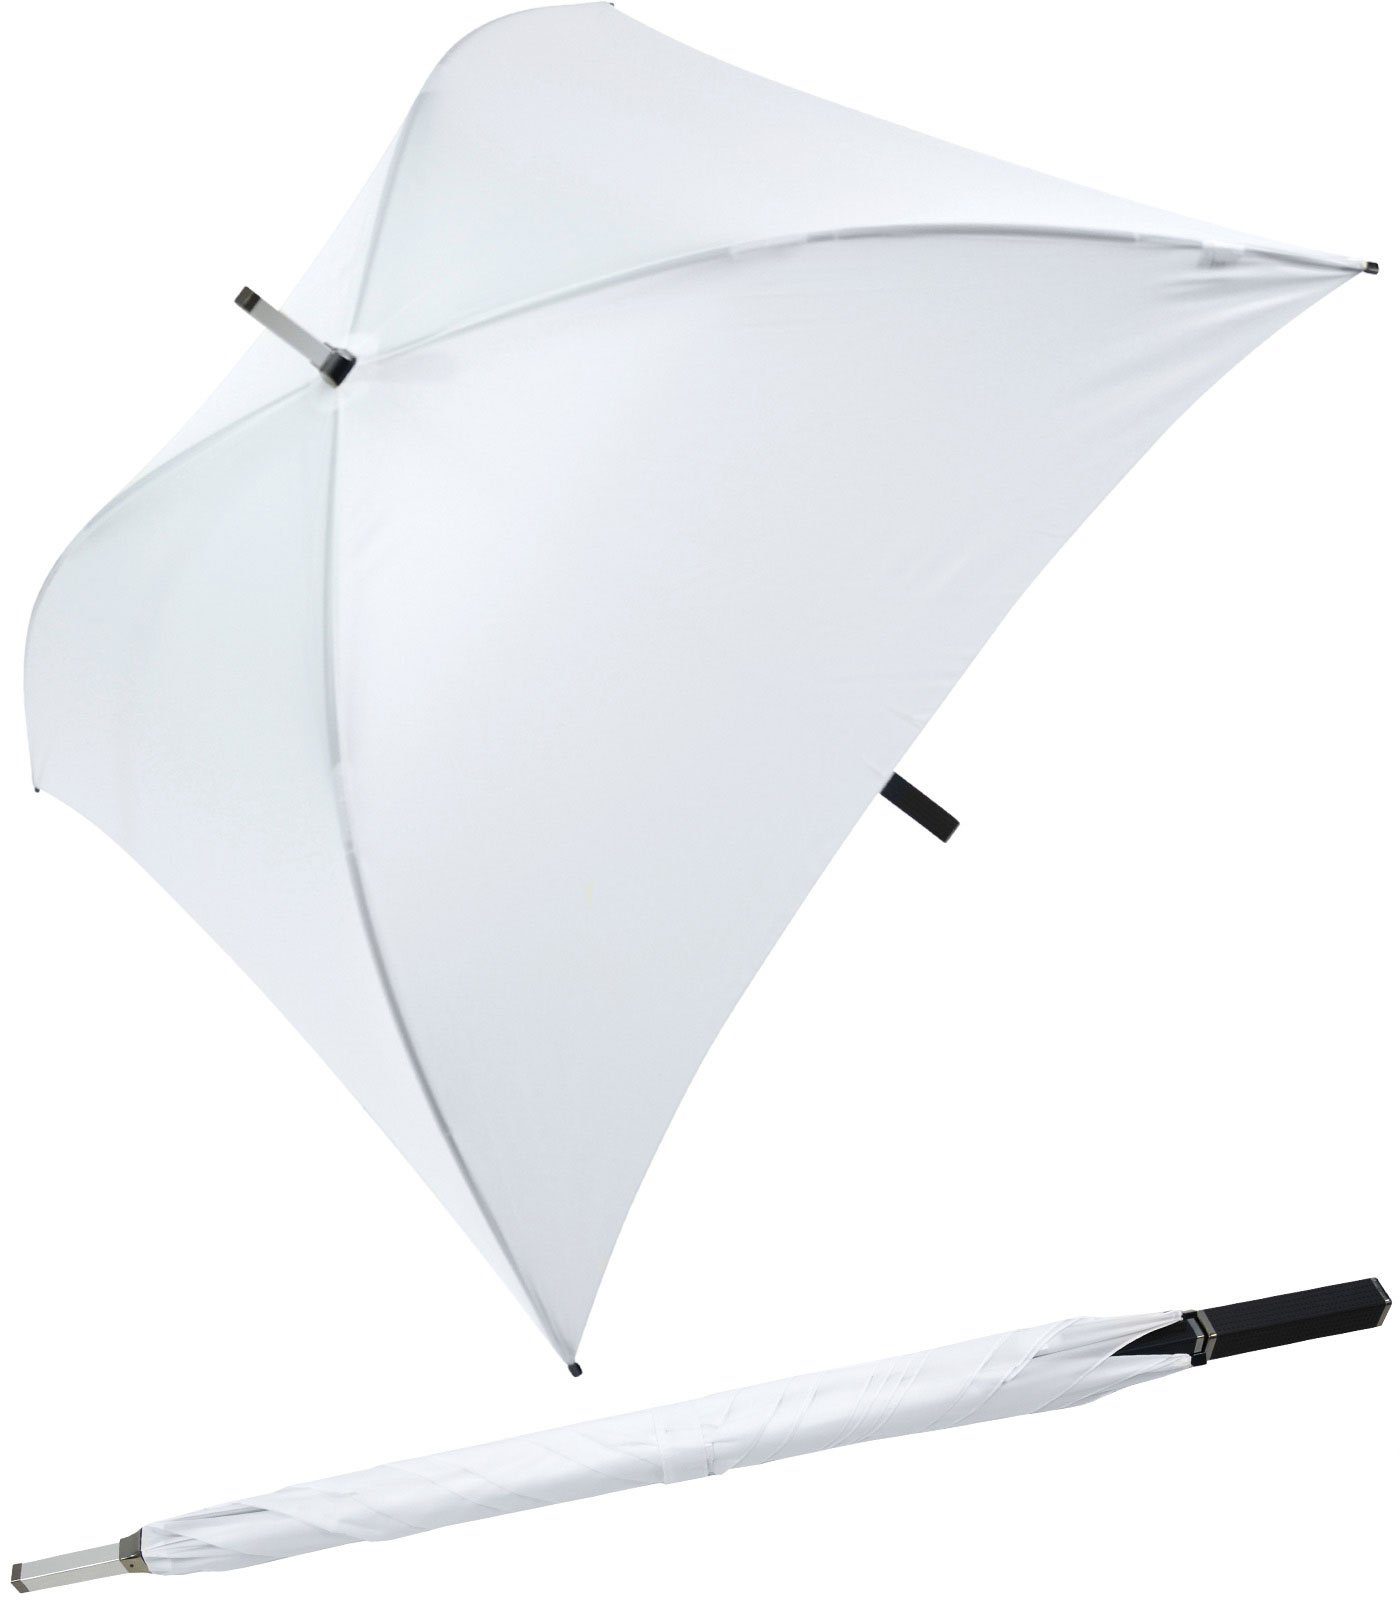 ganz quadratischer Impliva Regenschirm, weiß Regenschirm besondere voll Langregenschirm der All Square®